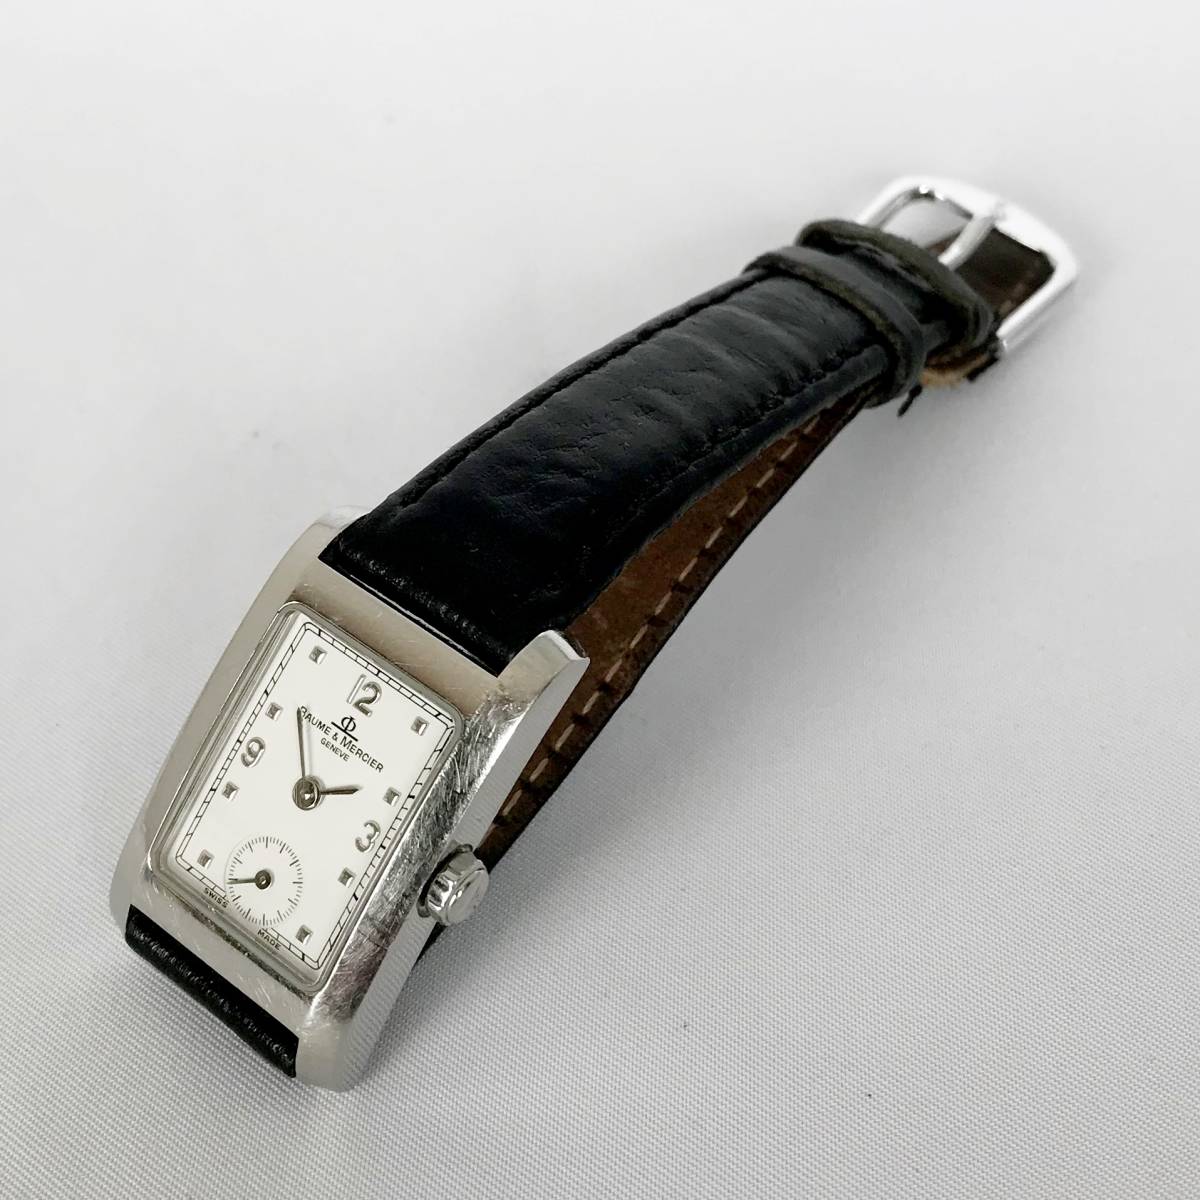 [ elegant ] Switzerland brand Baum &merusheBaume & Mercier antique for lady wristwatch k War tsu type MV045139